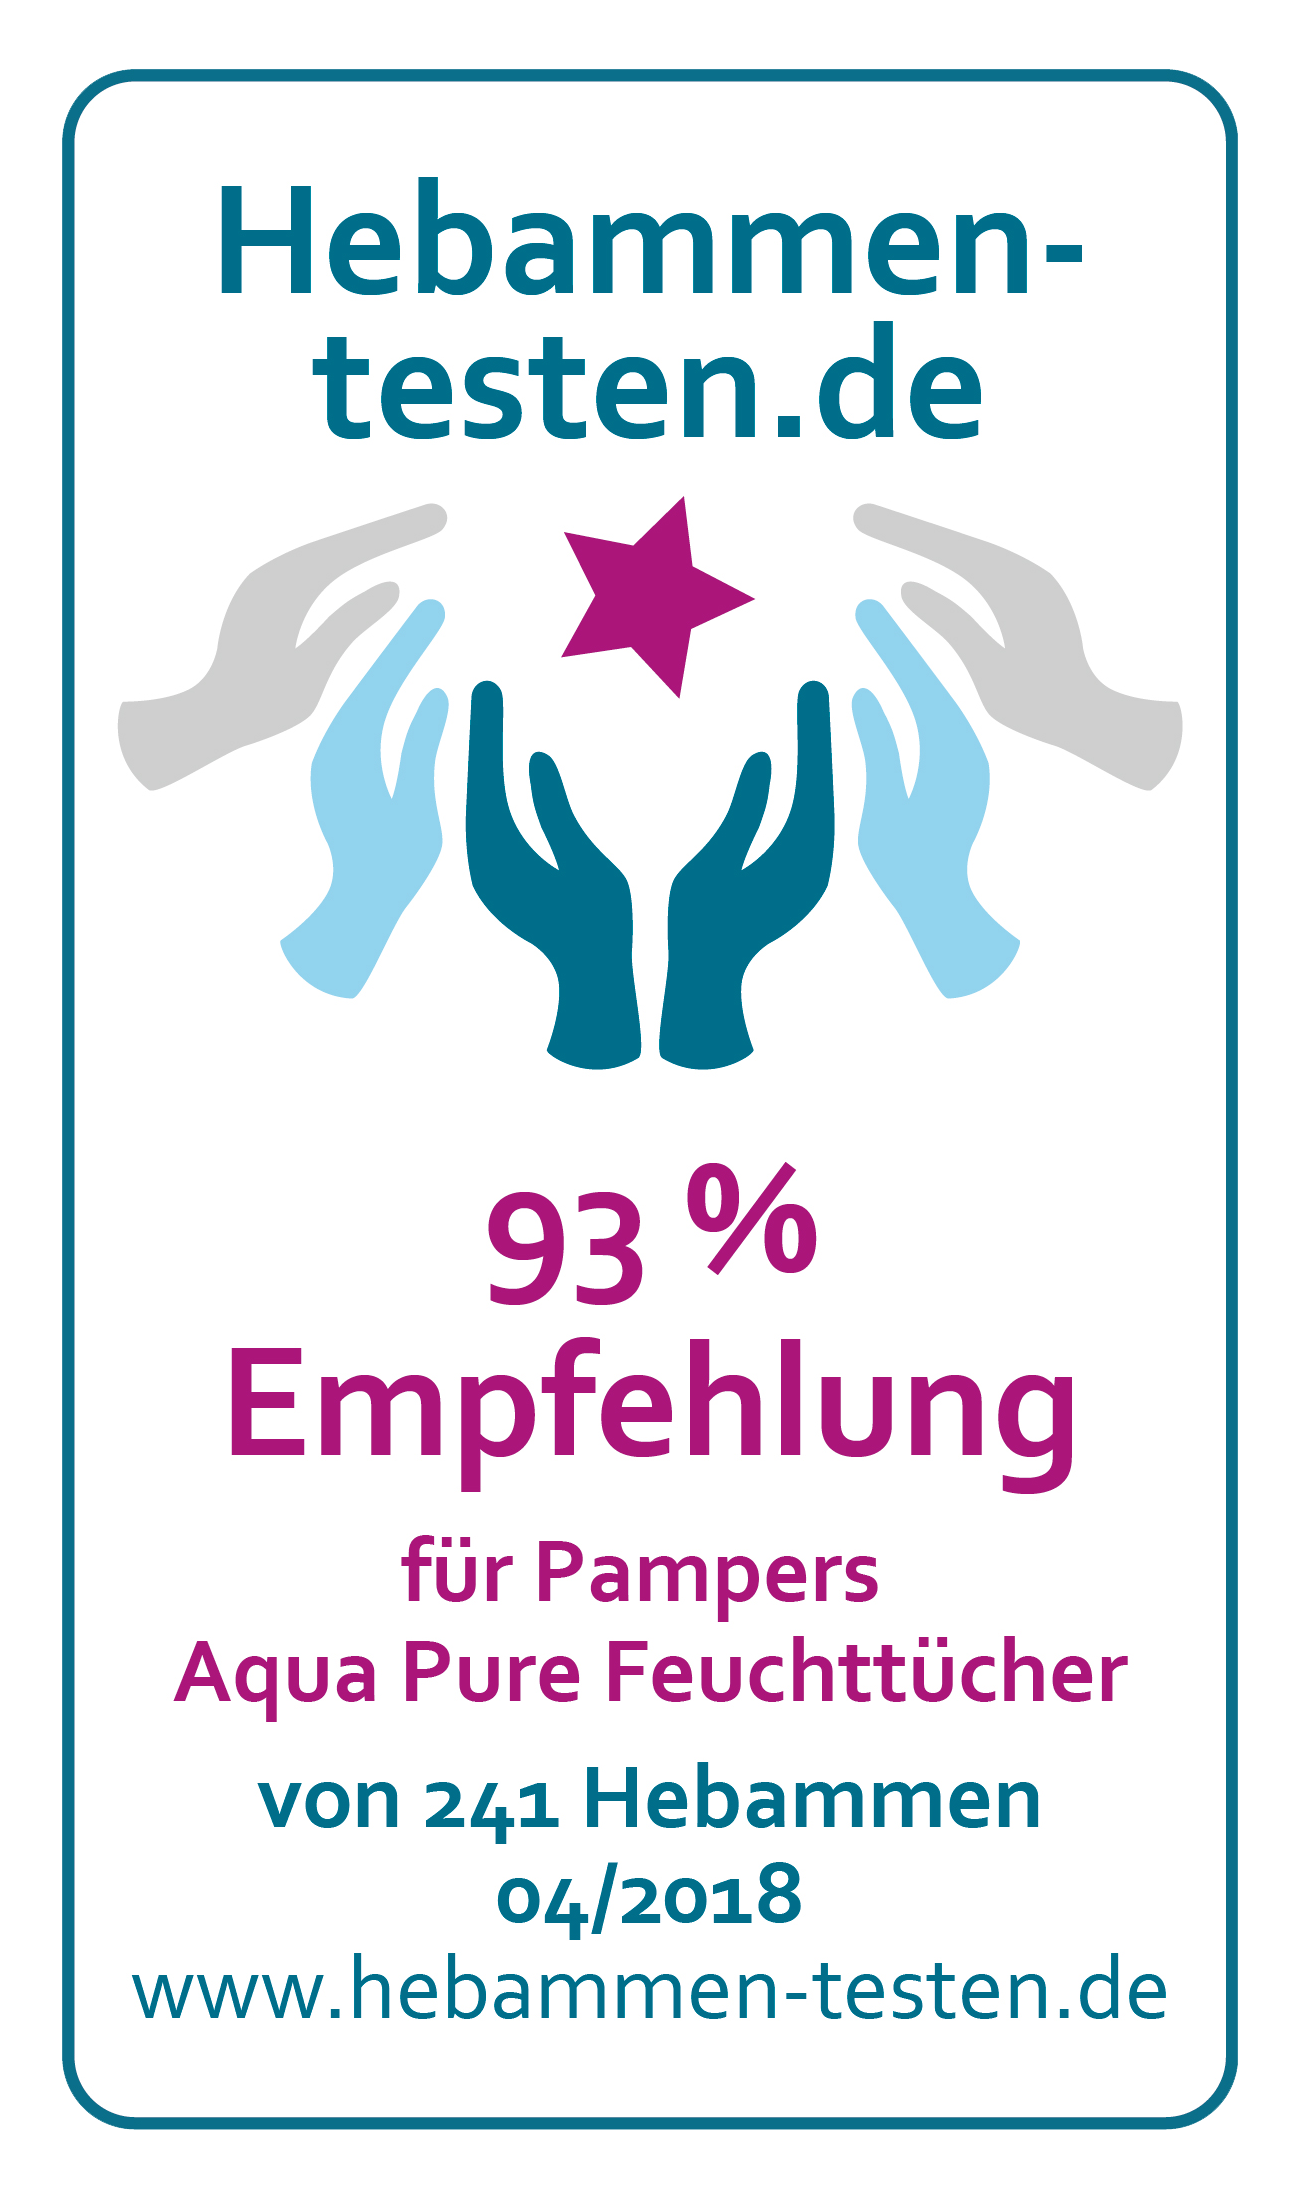 Hebammen-testen.de Siegel für Pampers Aqua Pure Feuchttücher 93 % Empfehlung von 241 Hebammen im April 2018 getestet.